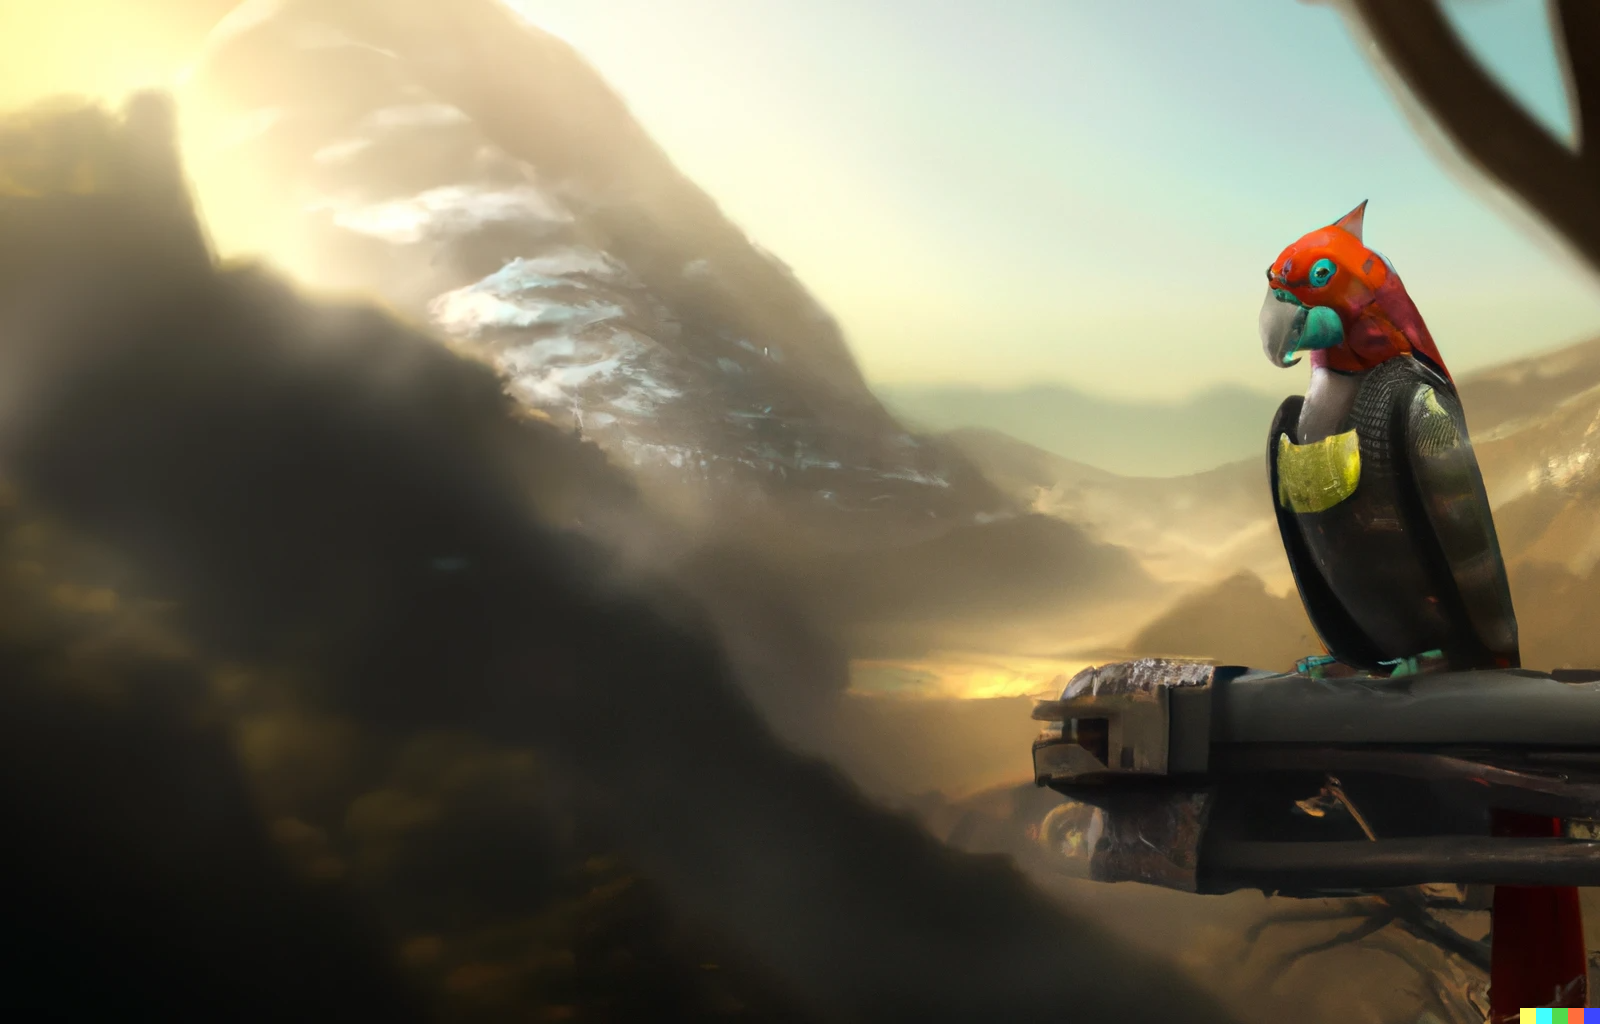 Dall-E Bild: A Robot Parrot in a mountainous environment